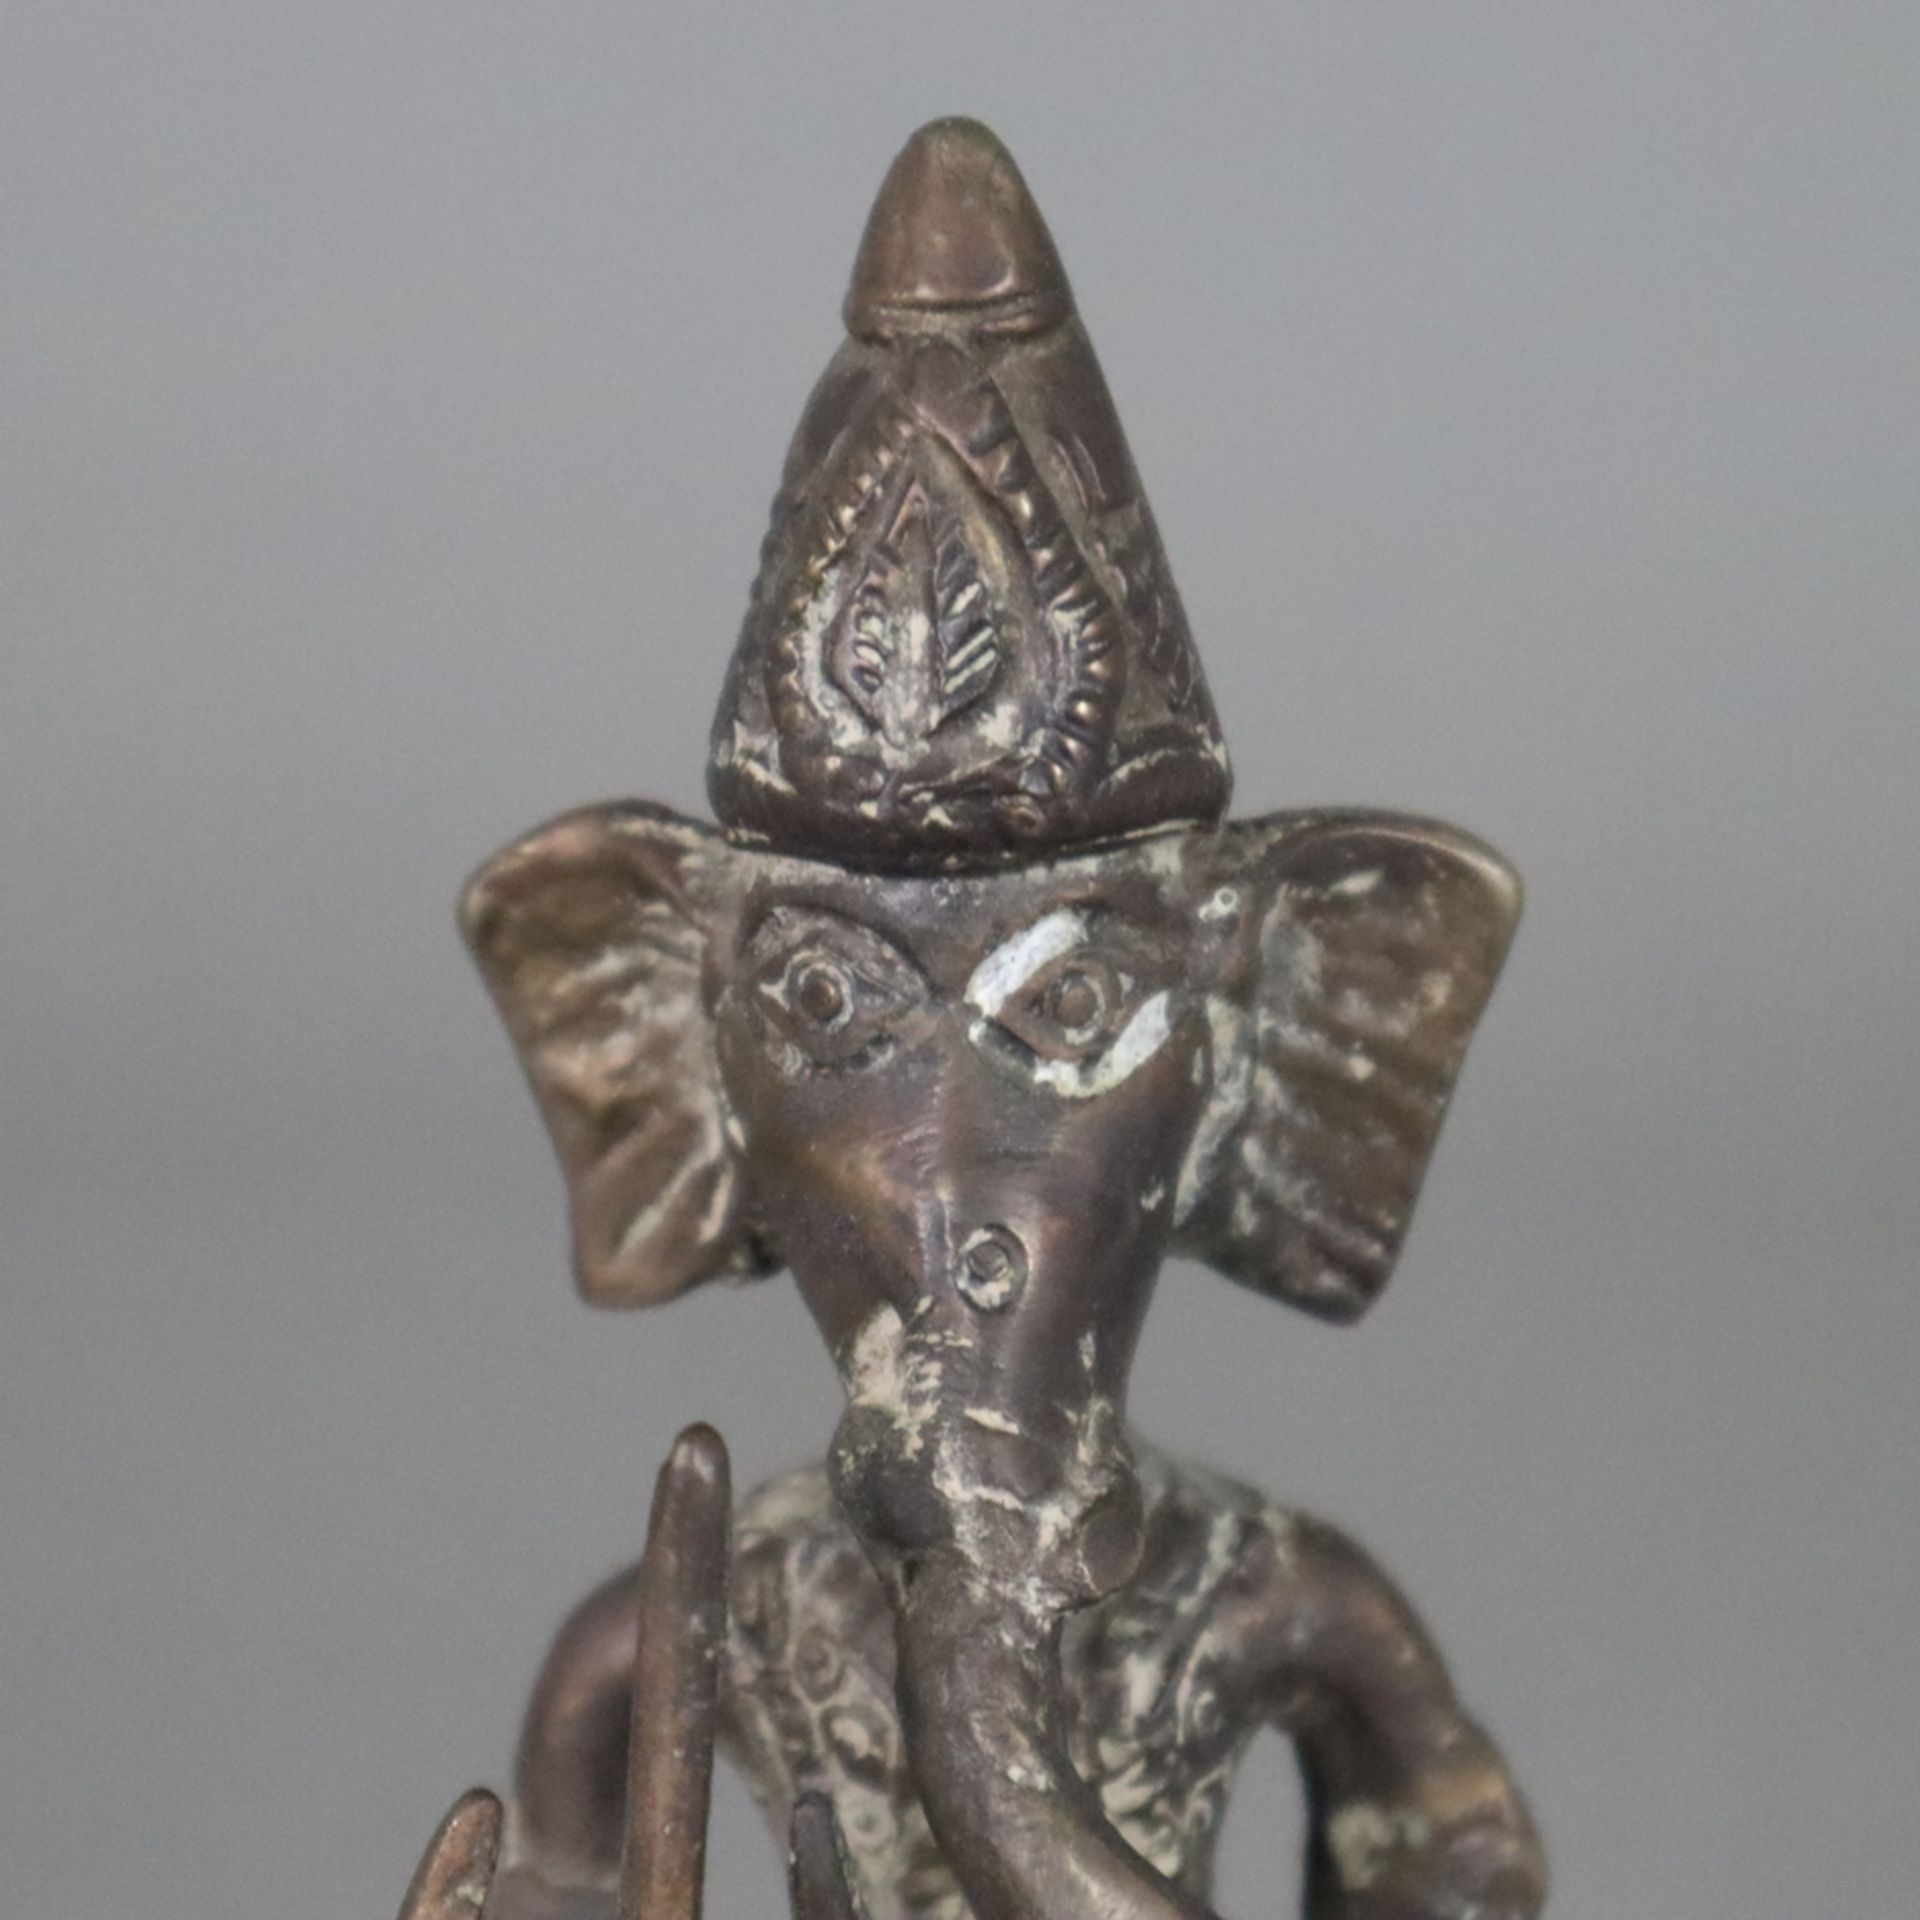 Elefantengott Ganesha - wohl Tibet/Nepal, Bronze, braun patiniert, stehende Darstellung mit Zepter  - Bild 4 aus 7